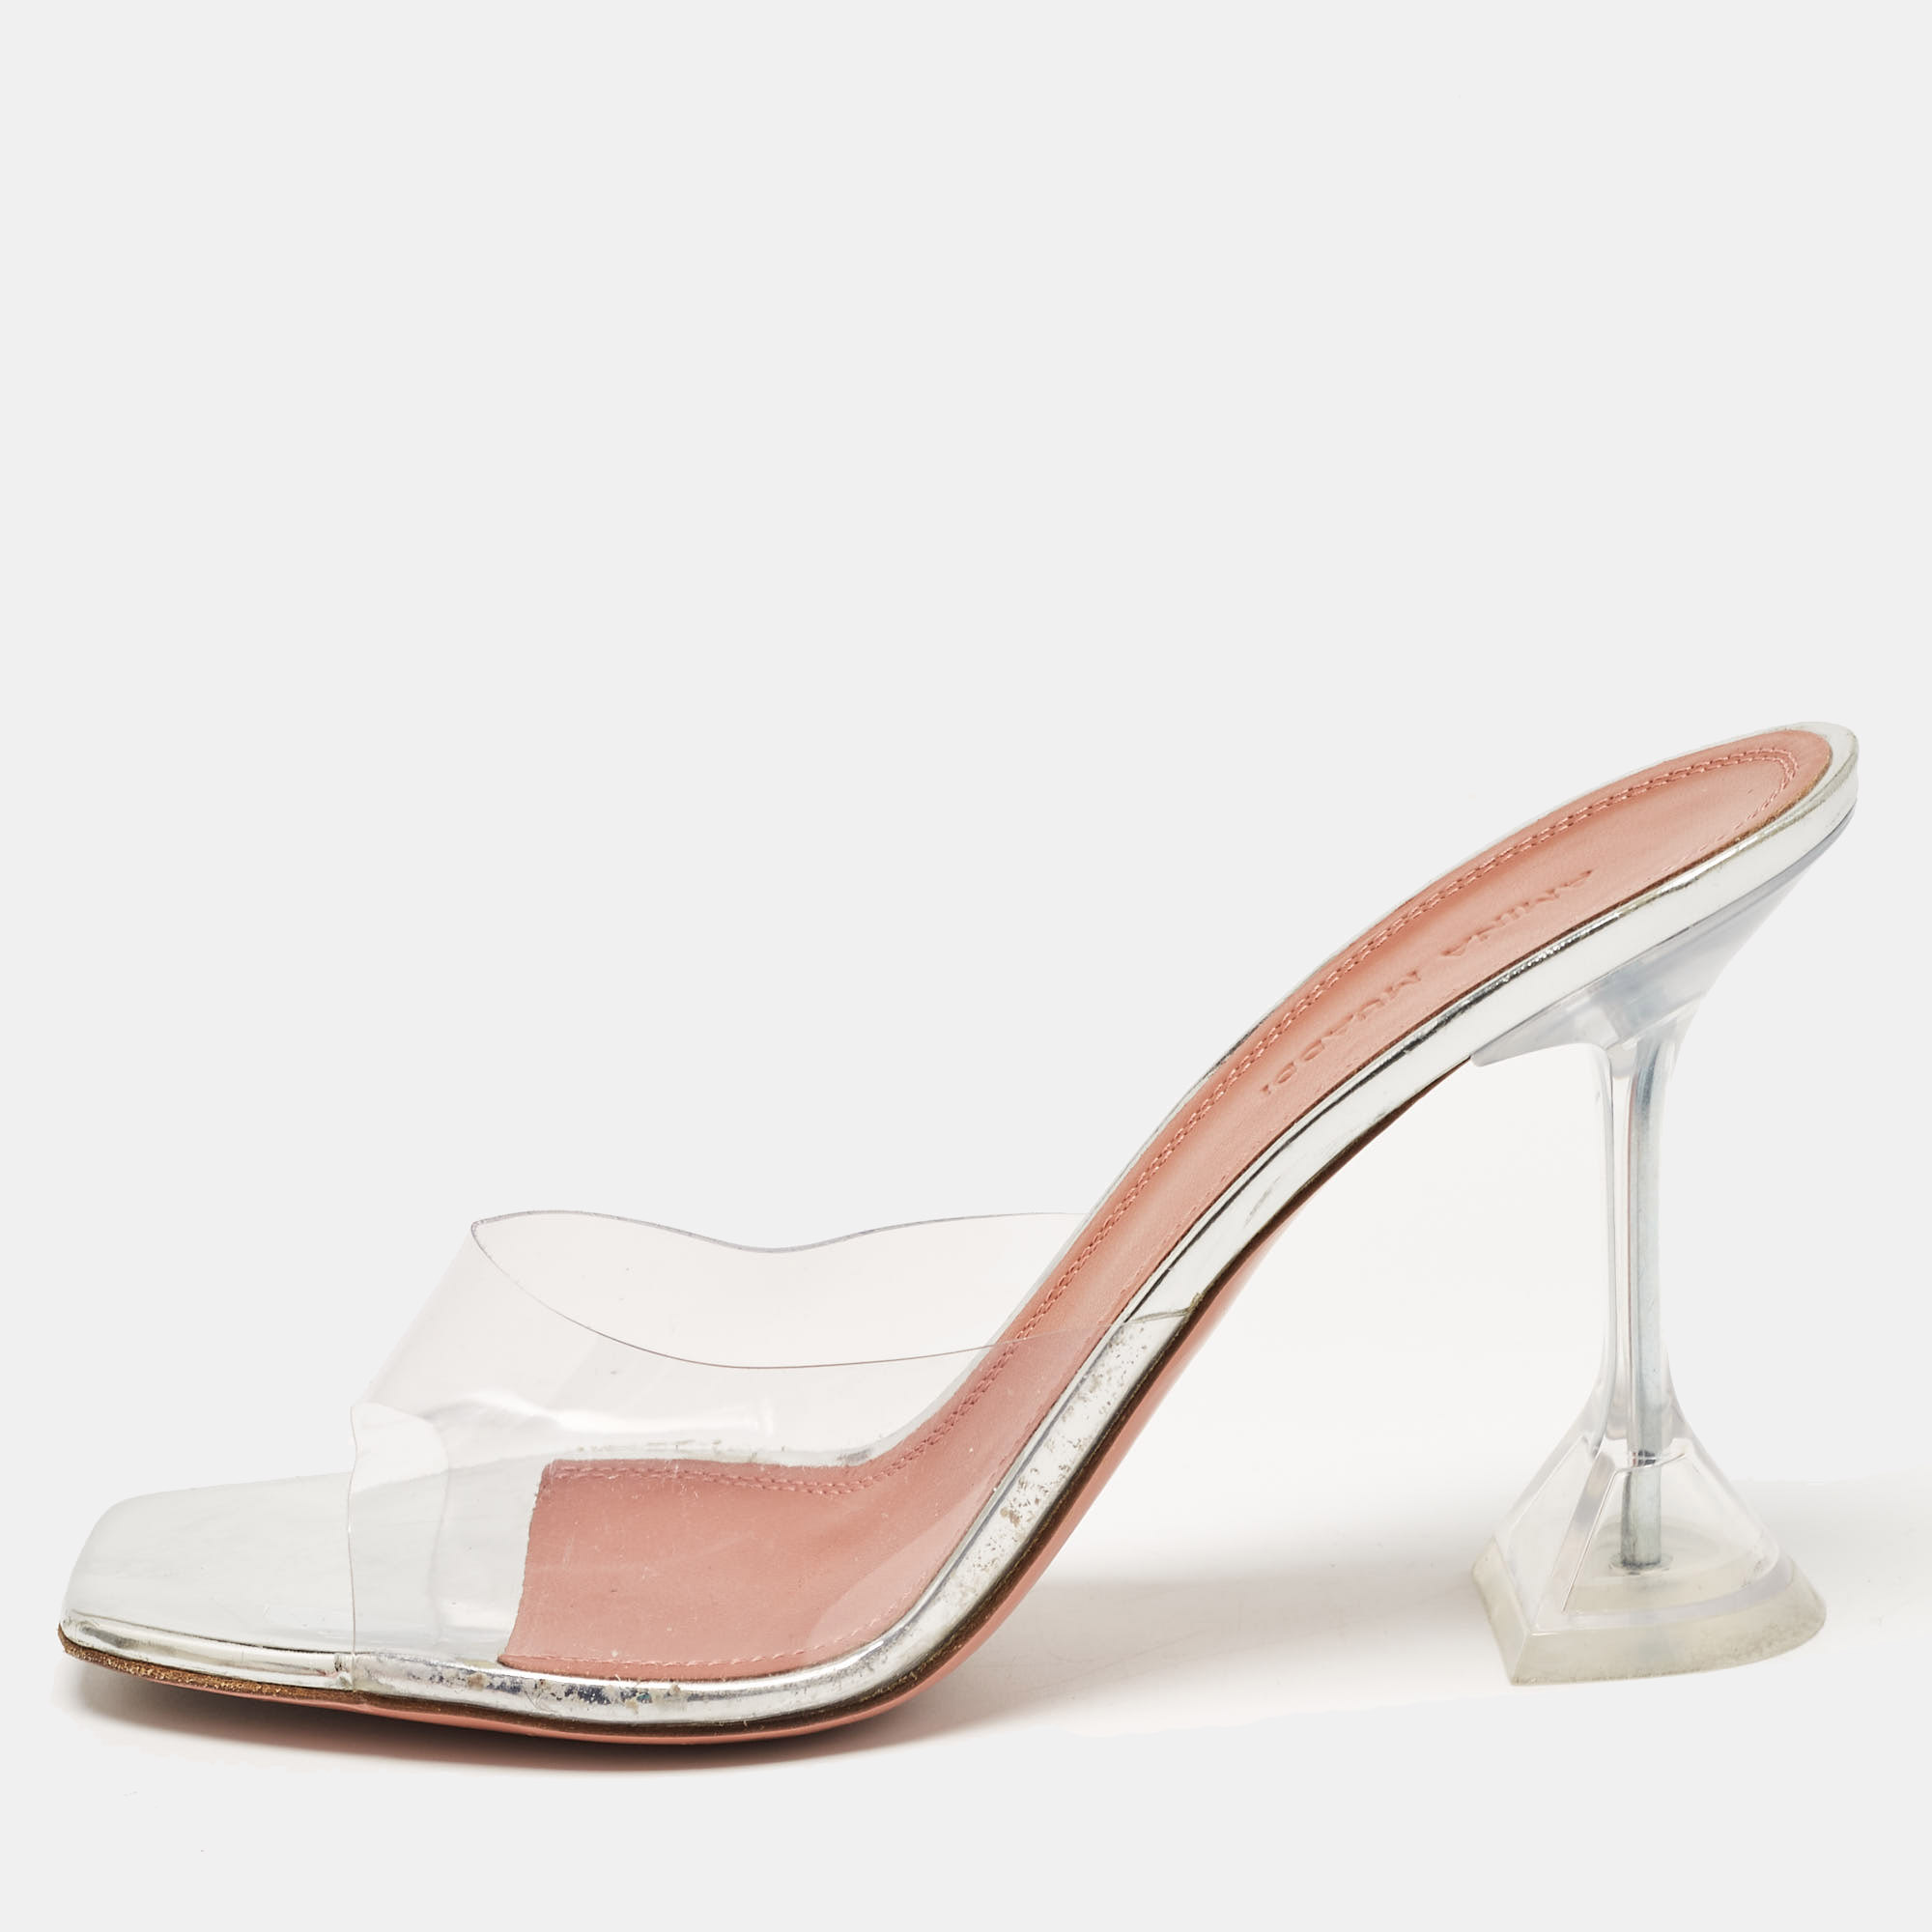 Amina muaddi silver pvc and patent leather lupita glass sandals size 38.5